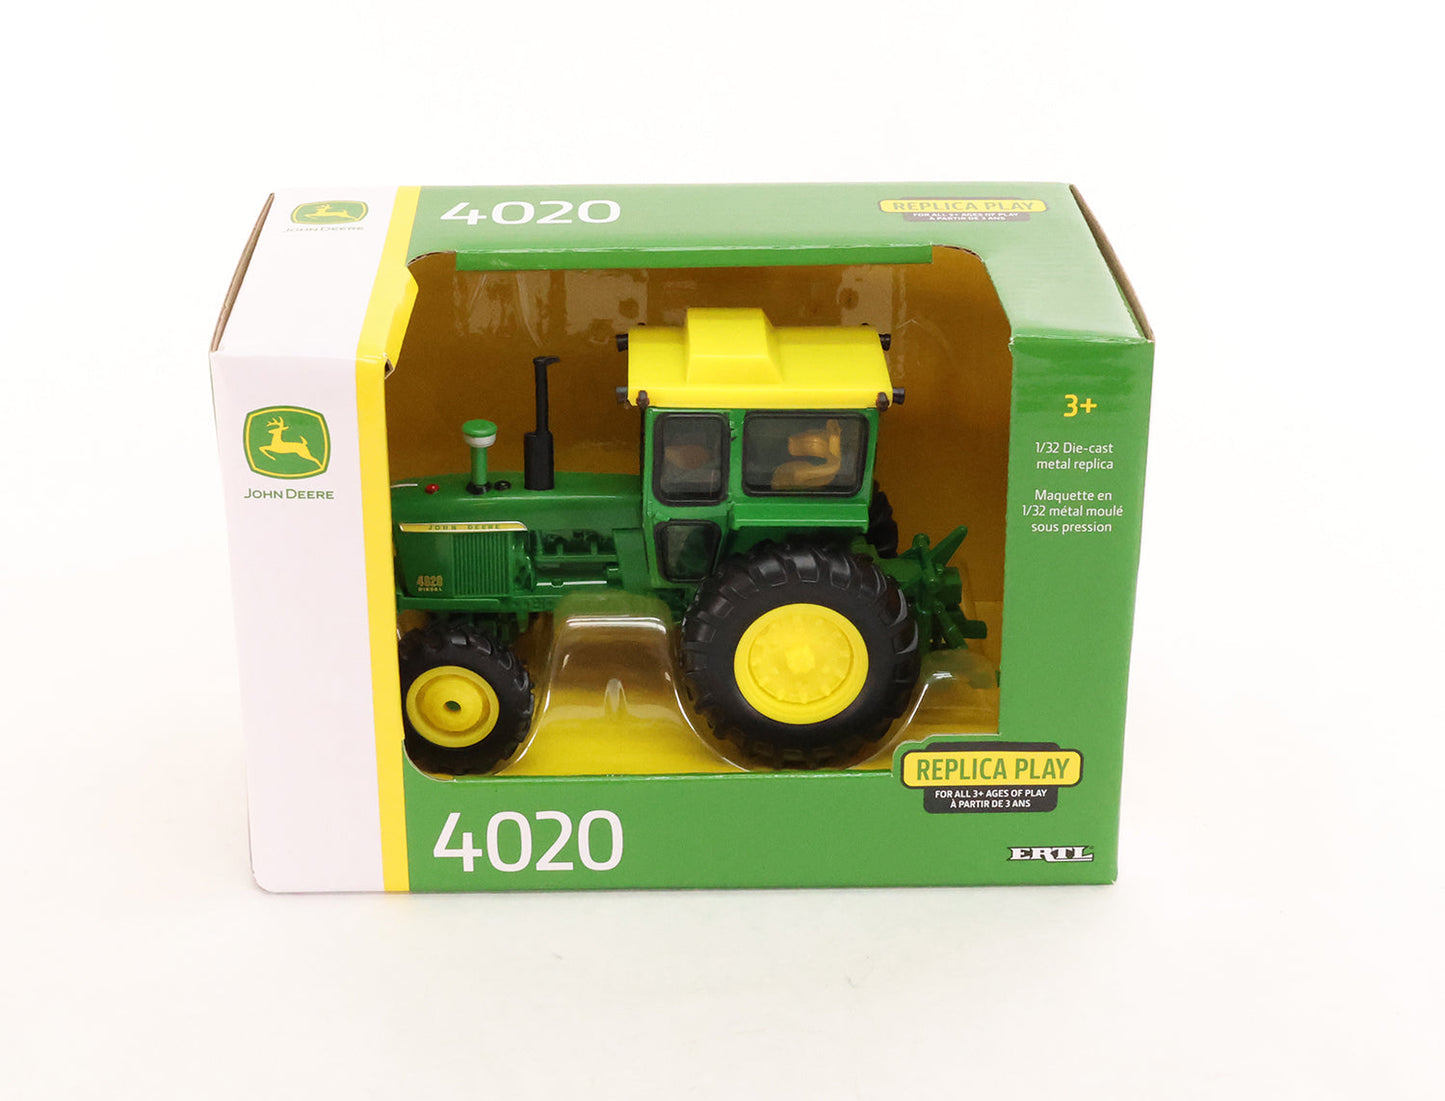 1/32 John Deere 4020 Diesel Tractor Toy - LP82807